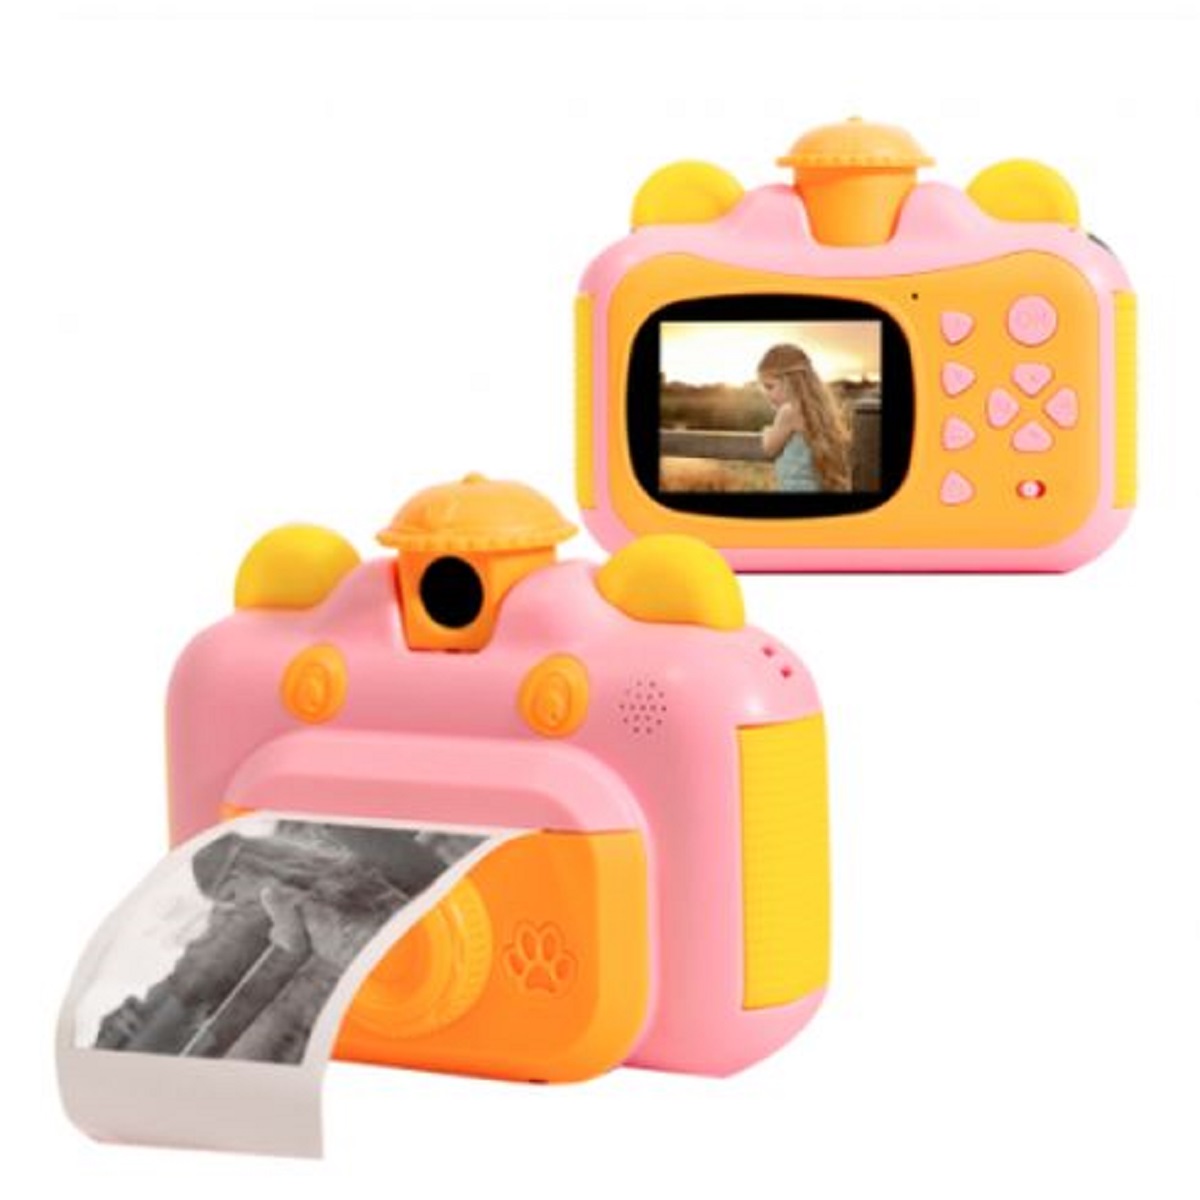 Детский фотоаппарат Leilam с мгновенной печатью фотографий 632714 детский фотоаппарат youlook с мгновенной печатью фотографий